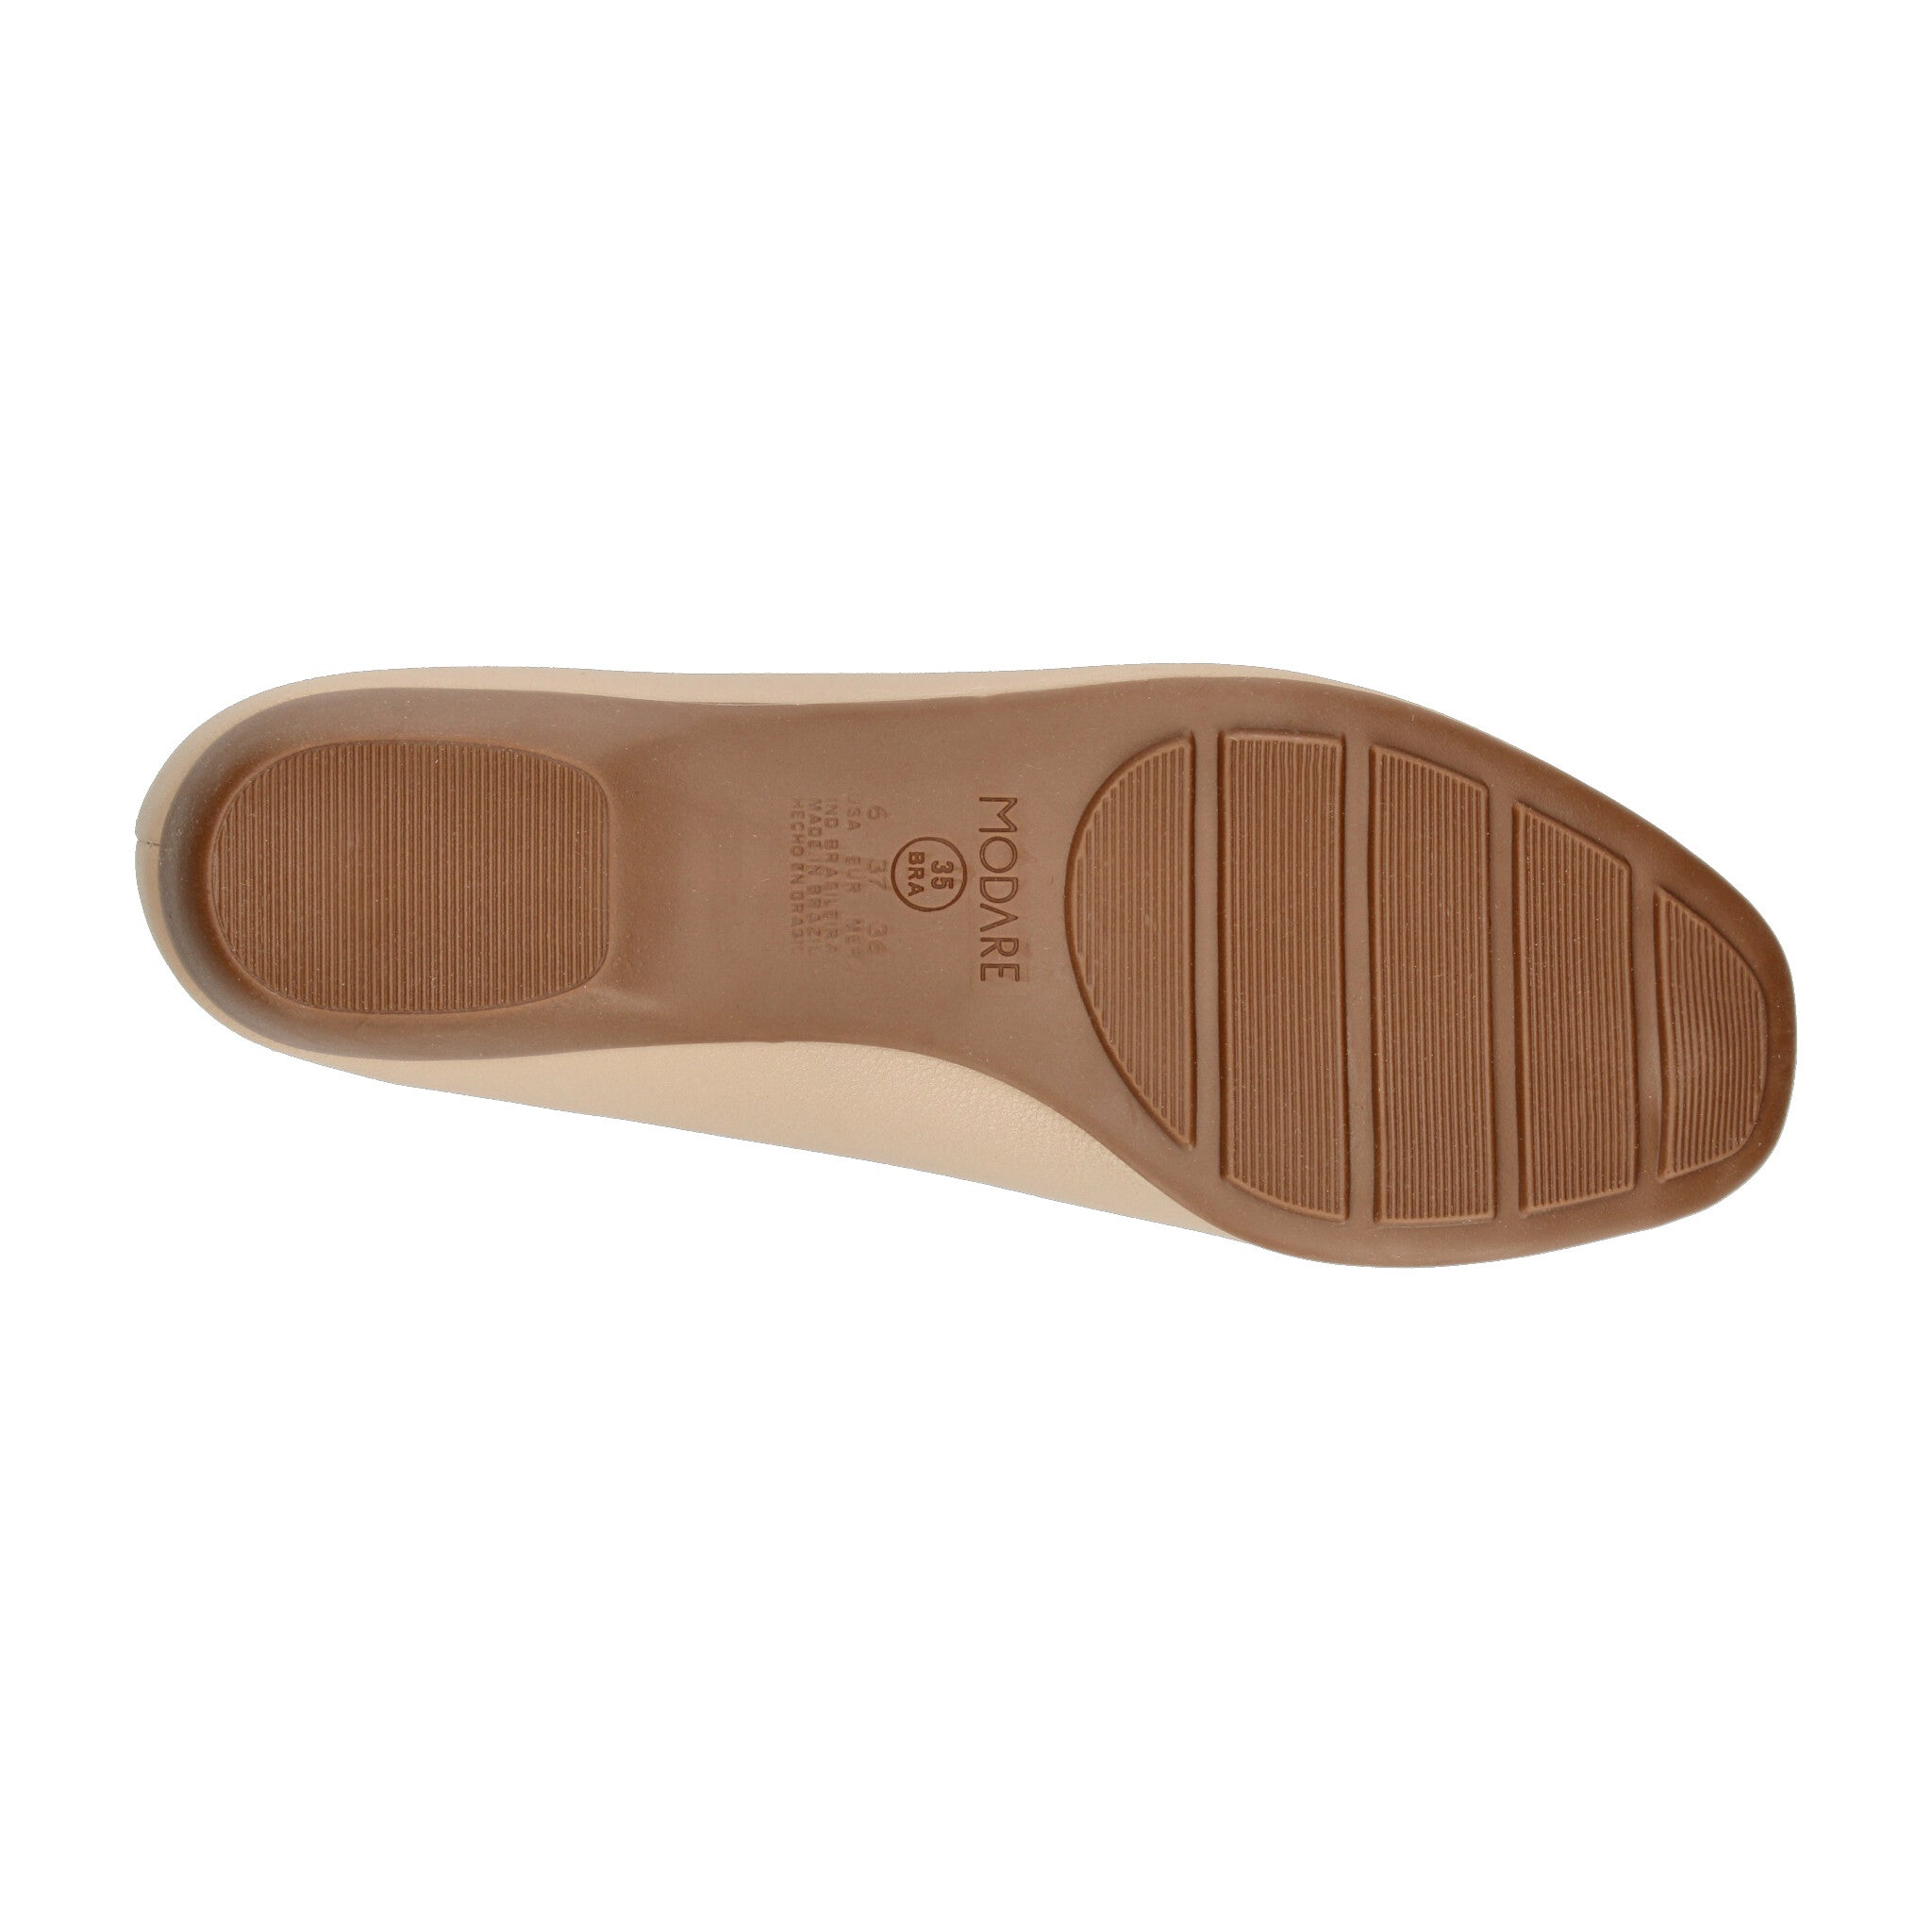 Zapato Confort Modare Beige para Mujer [MOD31] MODARE 